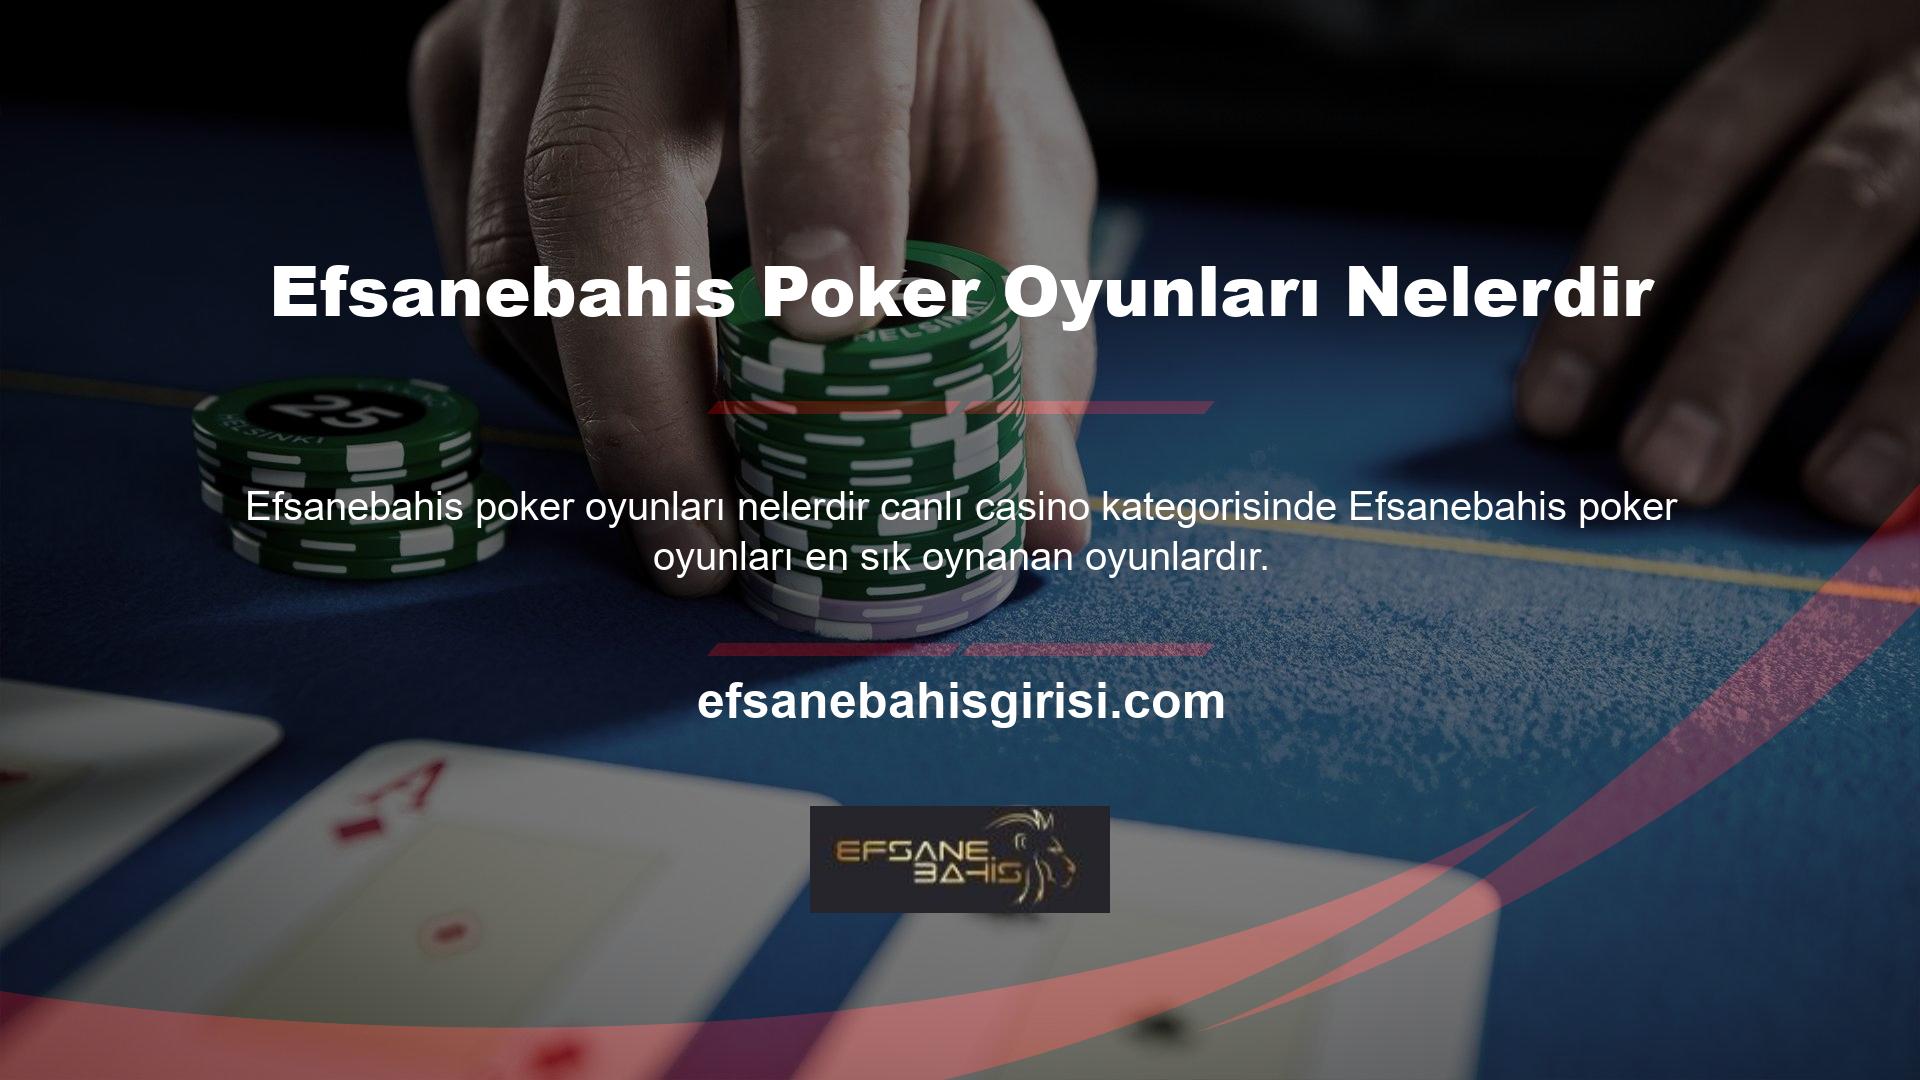 Casino kültürü, casino endüstrisindeki en önemli oyun olarak kabul edildiğinden pokeri oldukça saygın bir konumda tutar